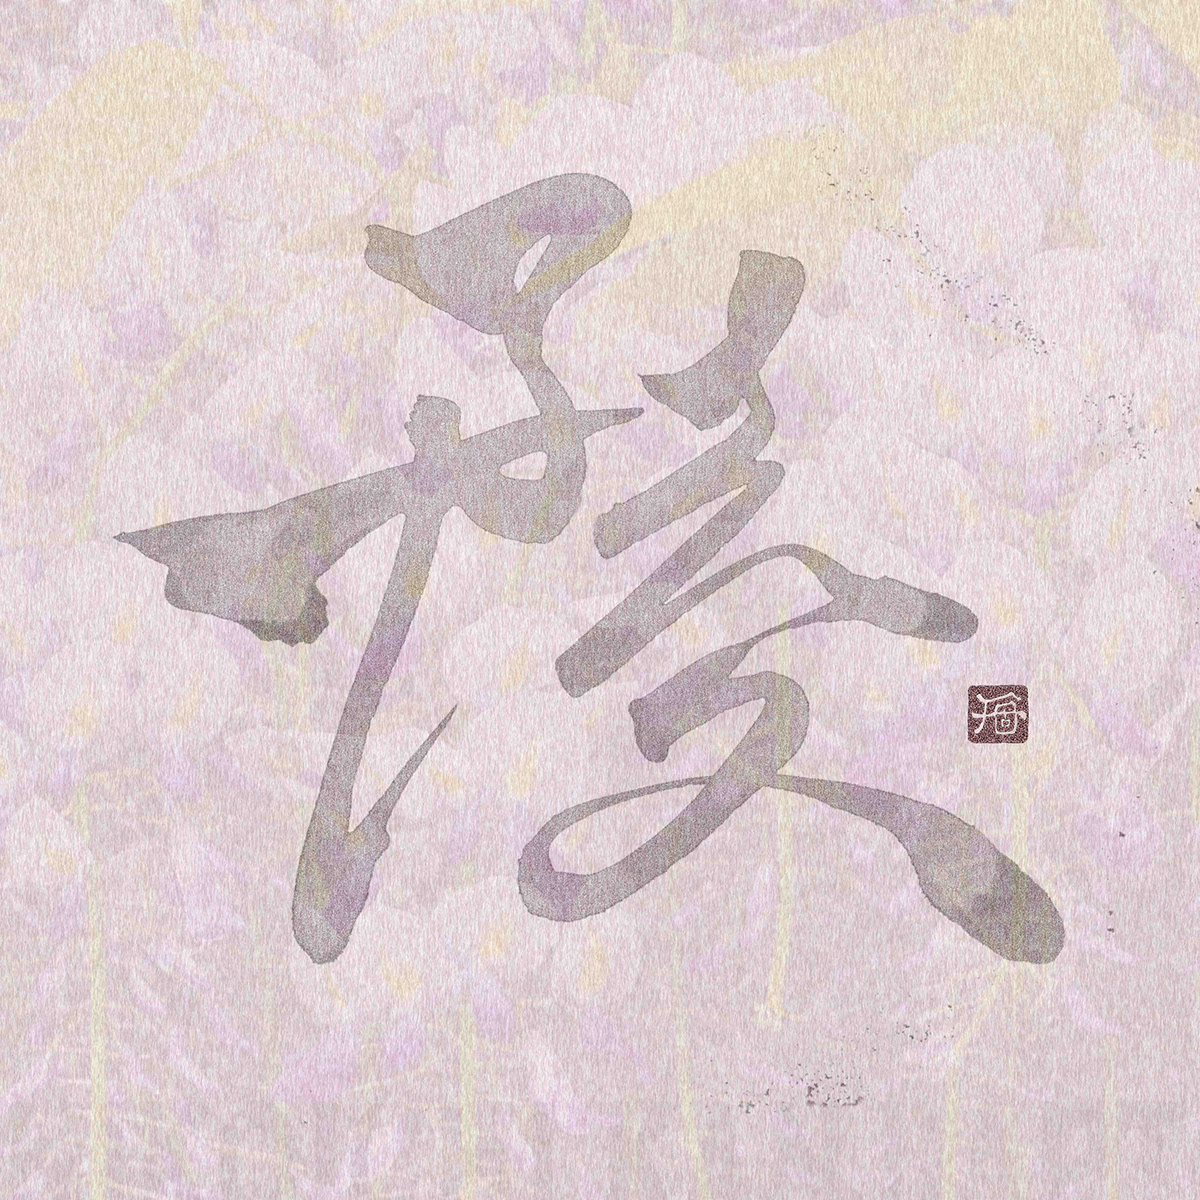 Shodo Calligraphy   kanji kanji art nft japanese art japanese style 안경 تخطيط  